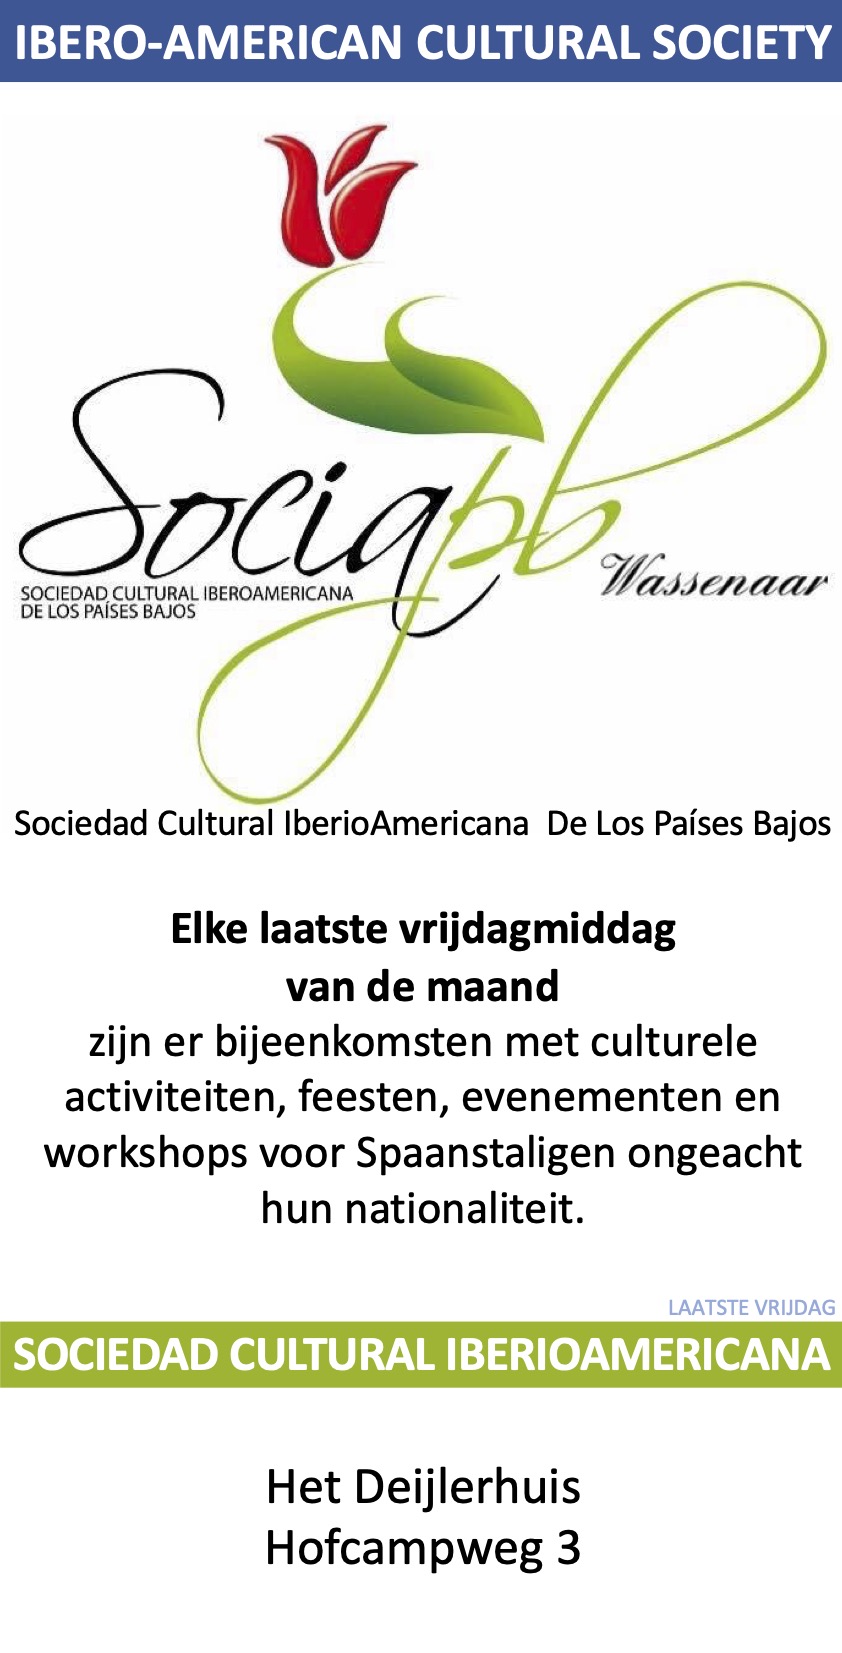 Sociedad Cultural IbericoAmericana de Los Países Bajos Deijlerhuis